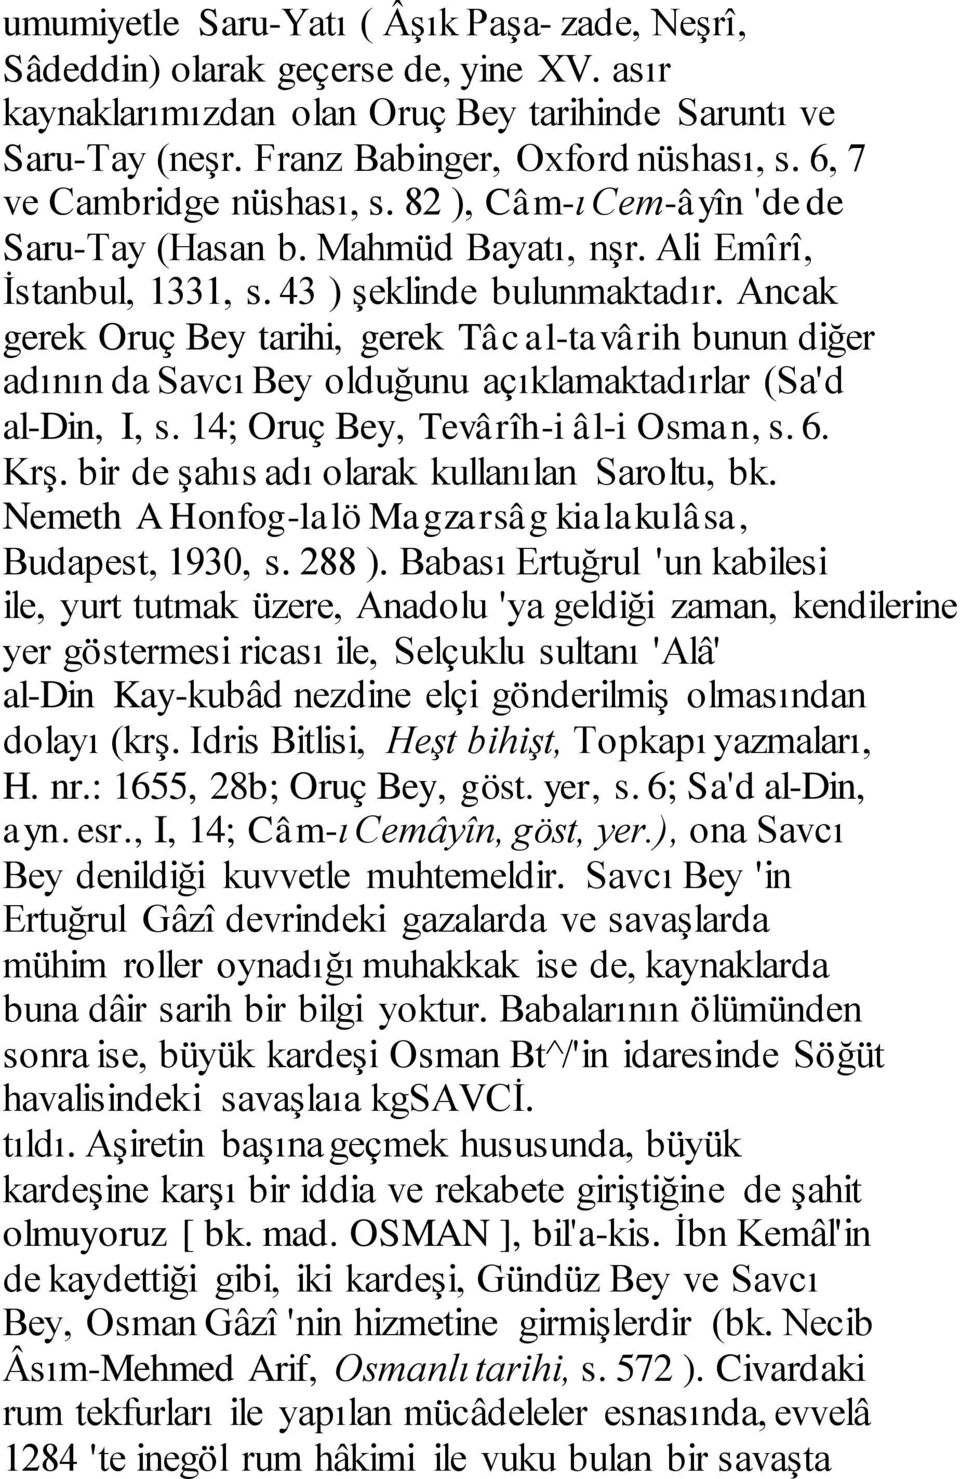 Ancak gerek Oruç Bey tarihi, gerek Tâc al-tavârih bunun diğer adının da Savcı Bey olduğunu açıklamaktadırlar (Sa'd al-din, I, s. 14; Oruç Bey, Tevârîh-i âl-i Osman, s. 6. Krş.